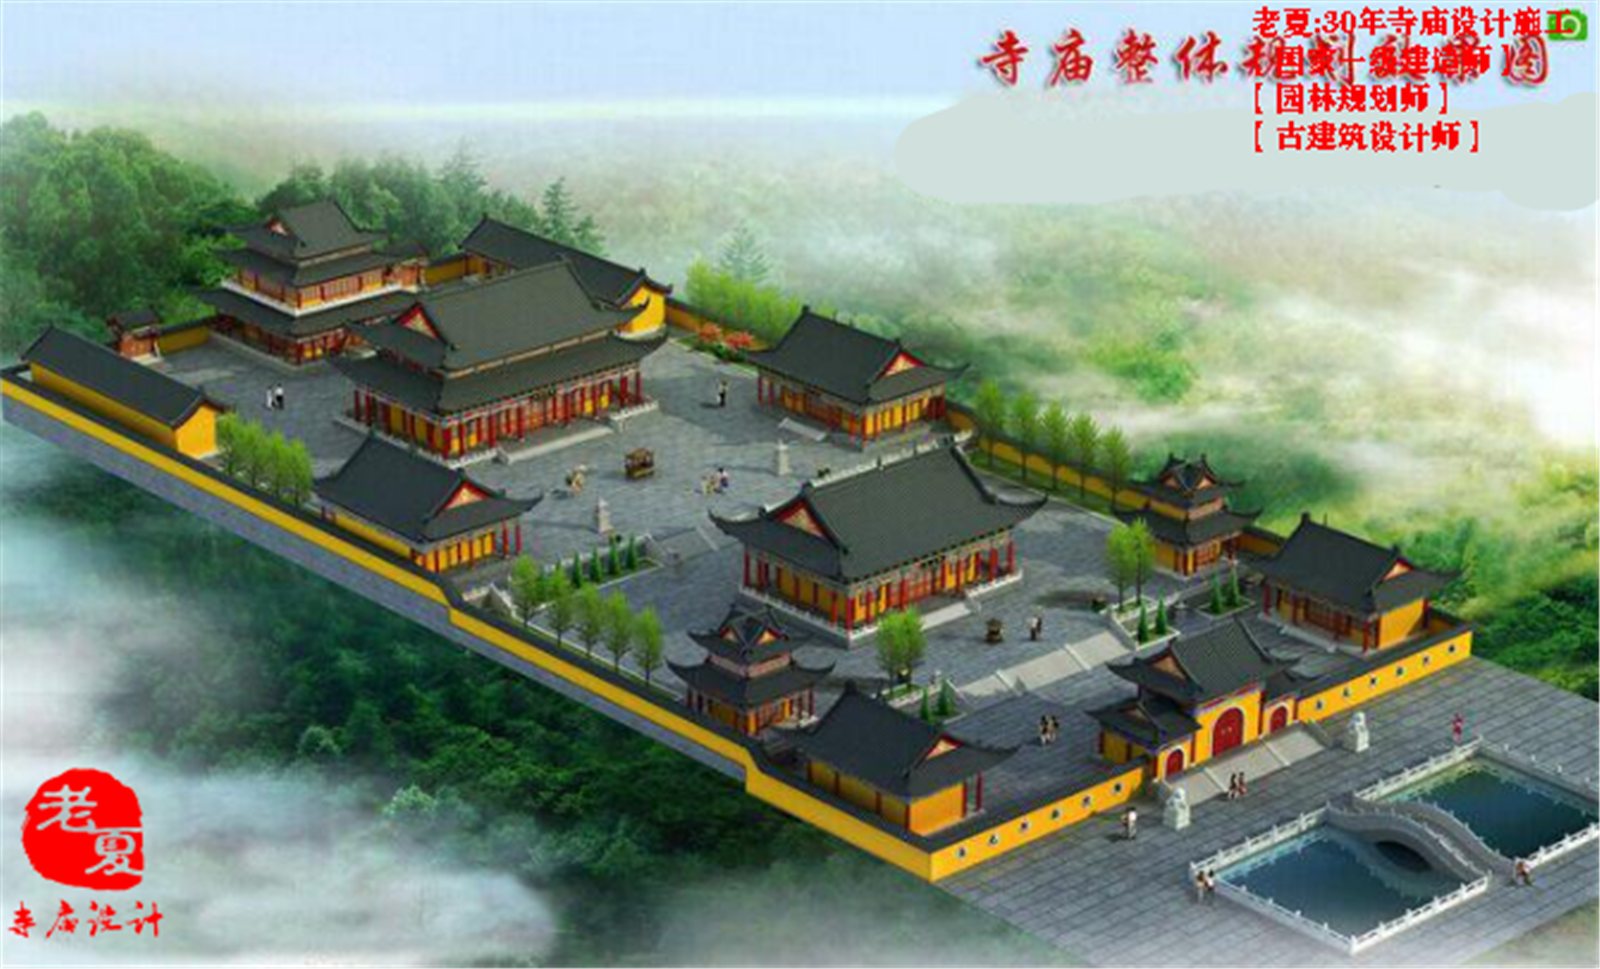 广东寺庙规划设计 陕西寺庙效果图 浙江寺庙鸟瞰图